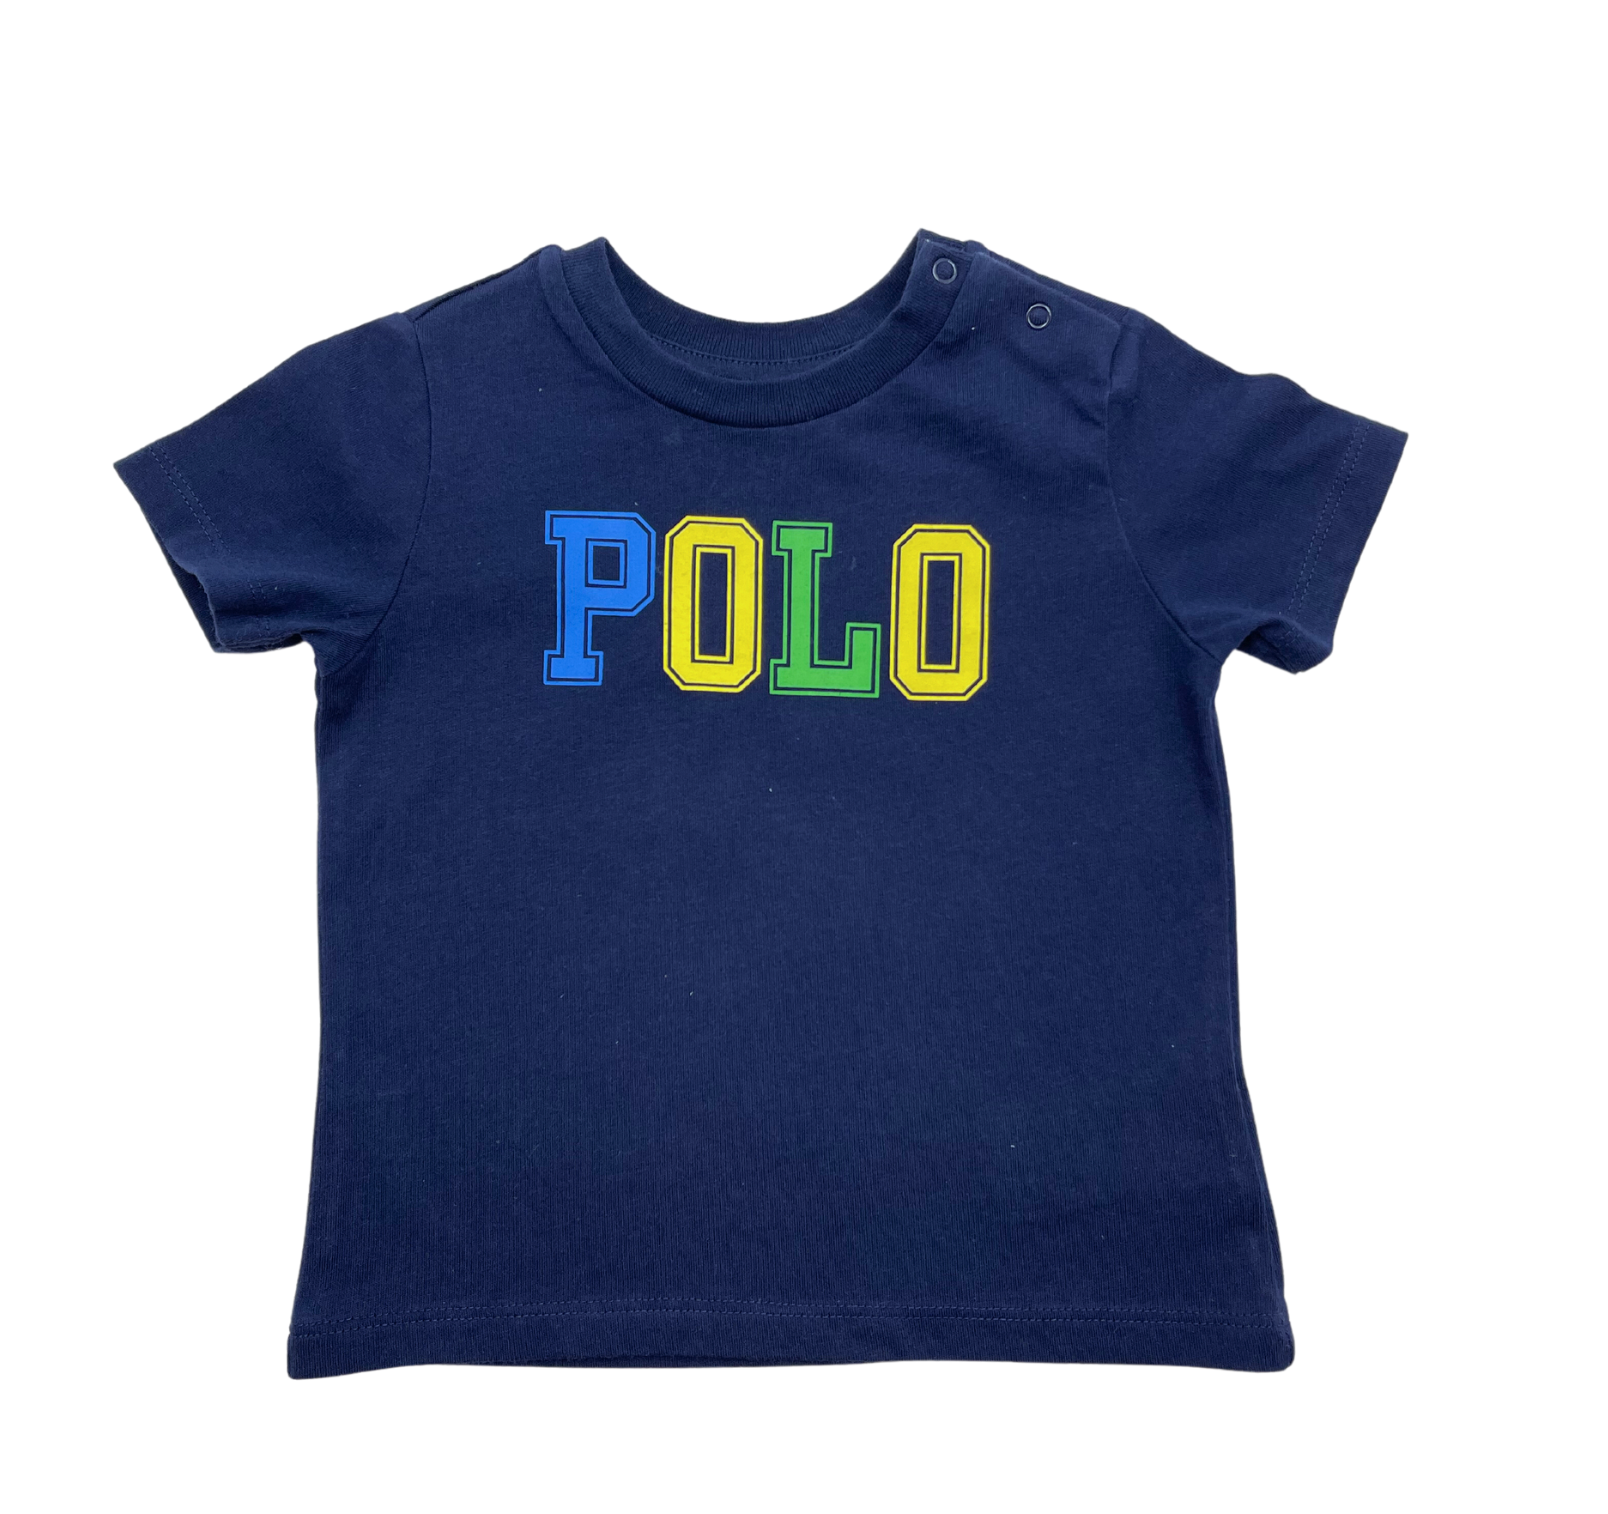 RALPH LAUREN - T-shirt Polo - 12 mois